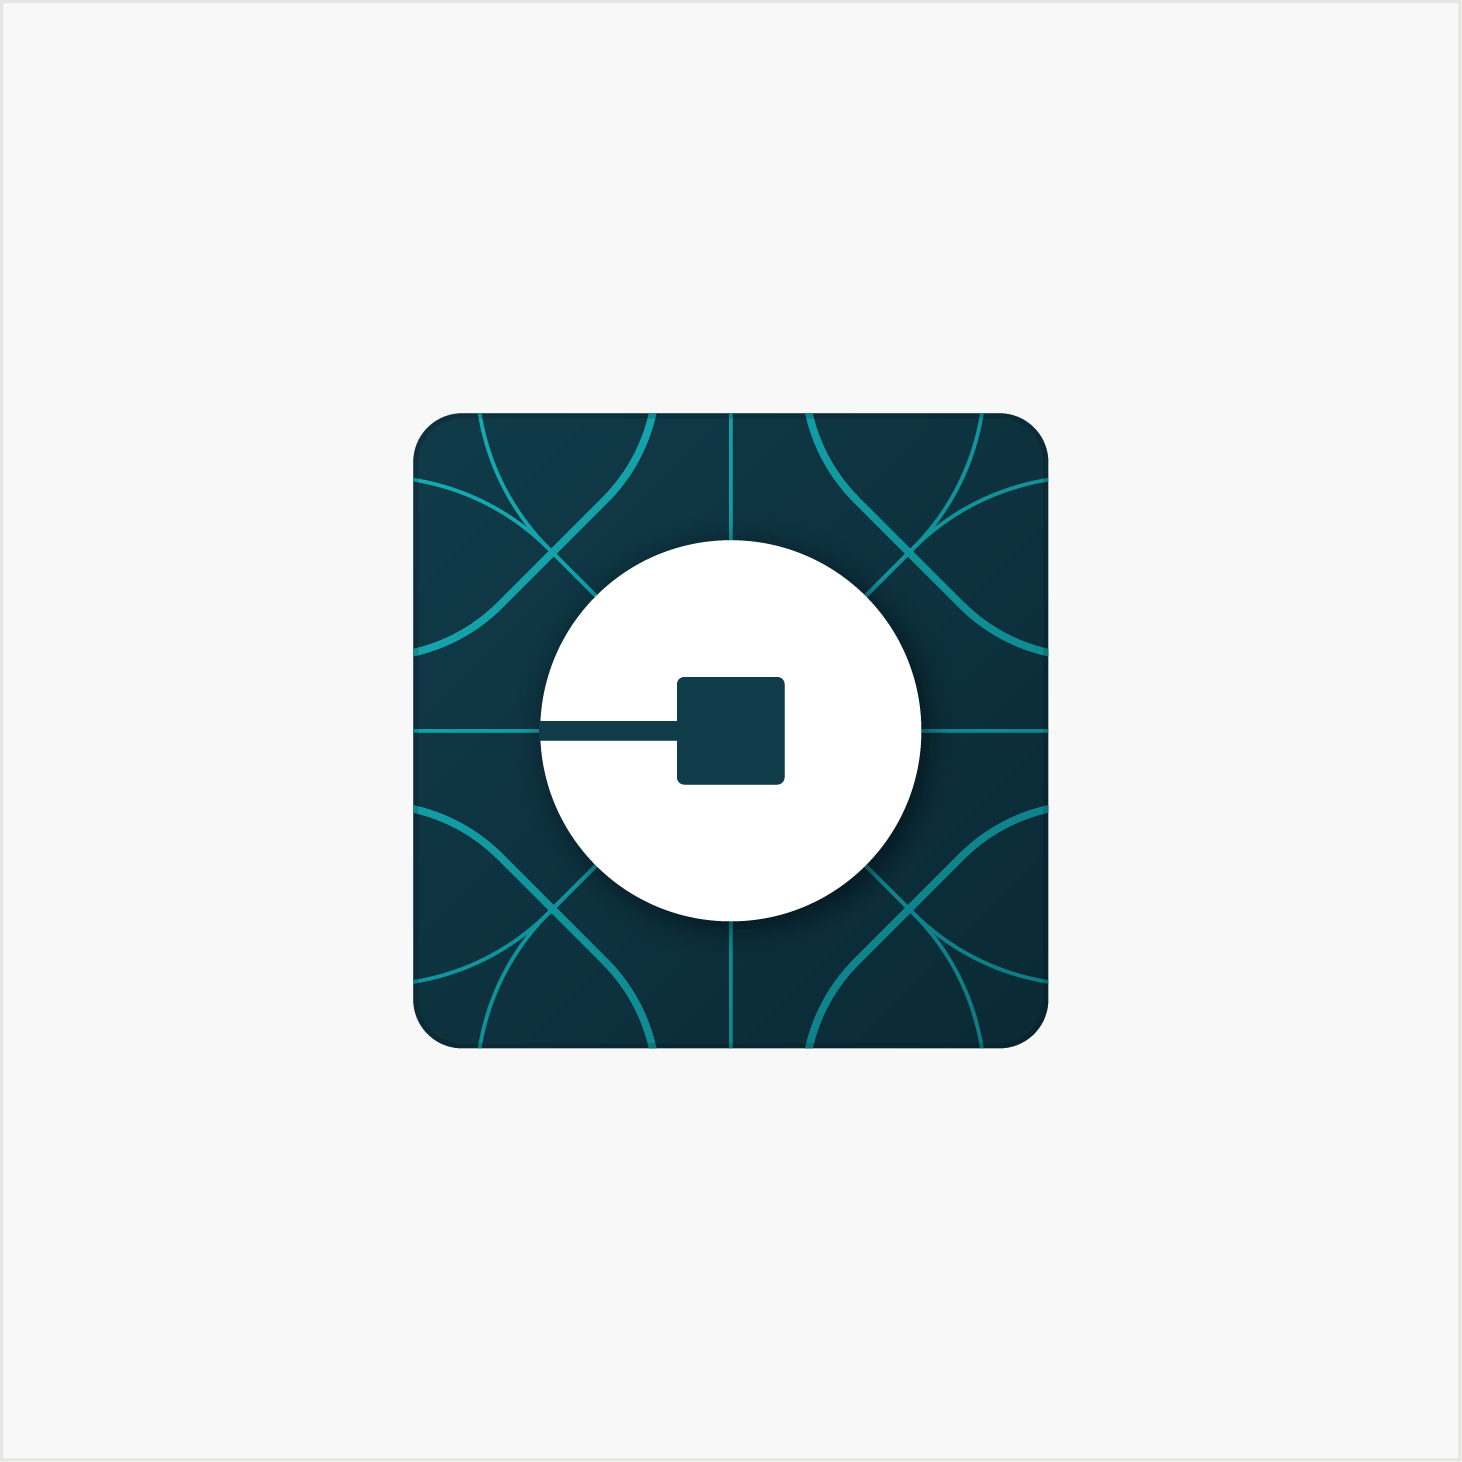 Uber Logo - Uber reveals new logo